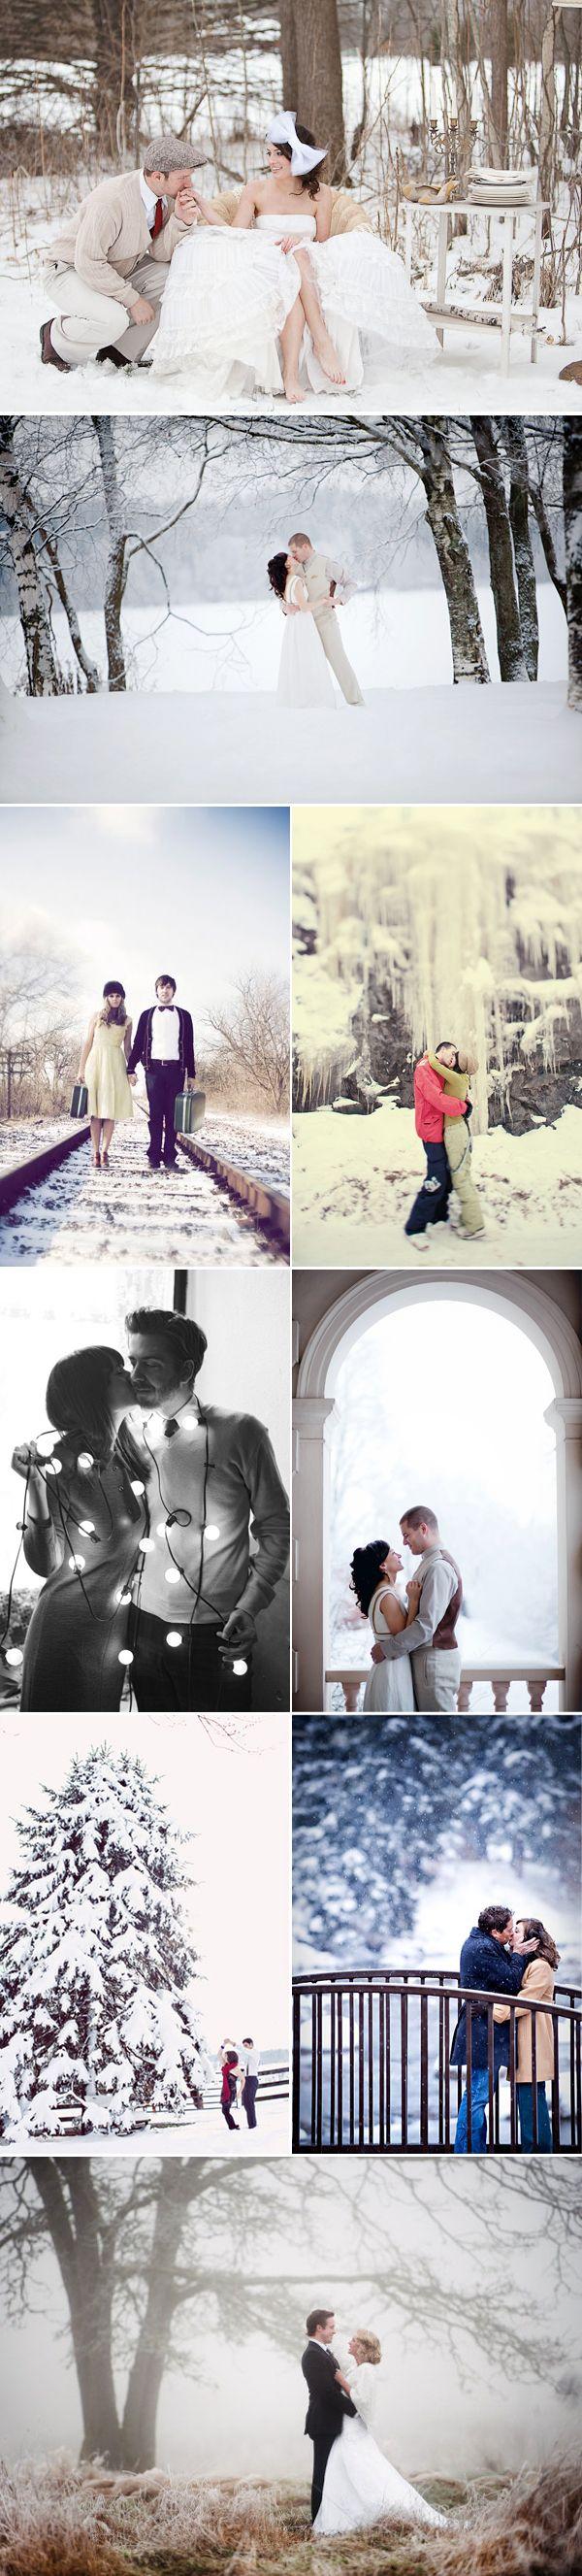 زفاف - الشتاء صور خطوبة